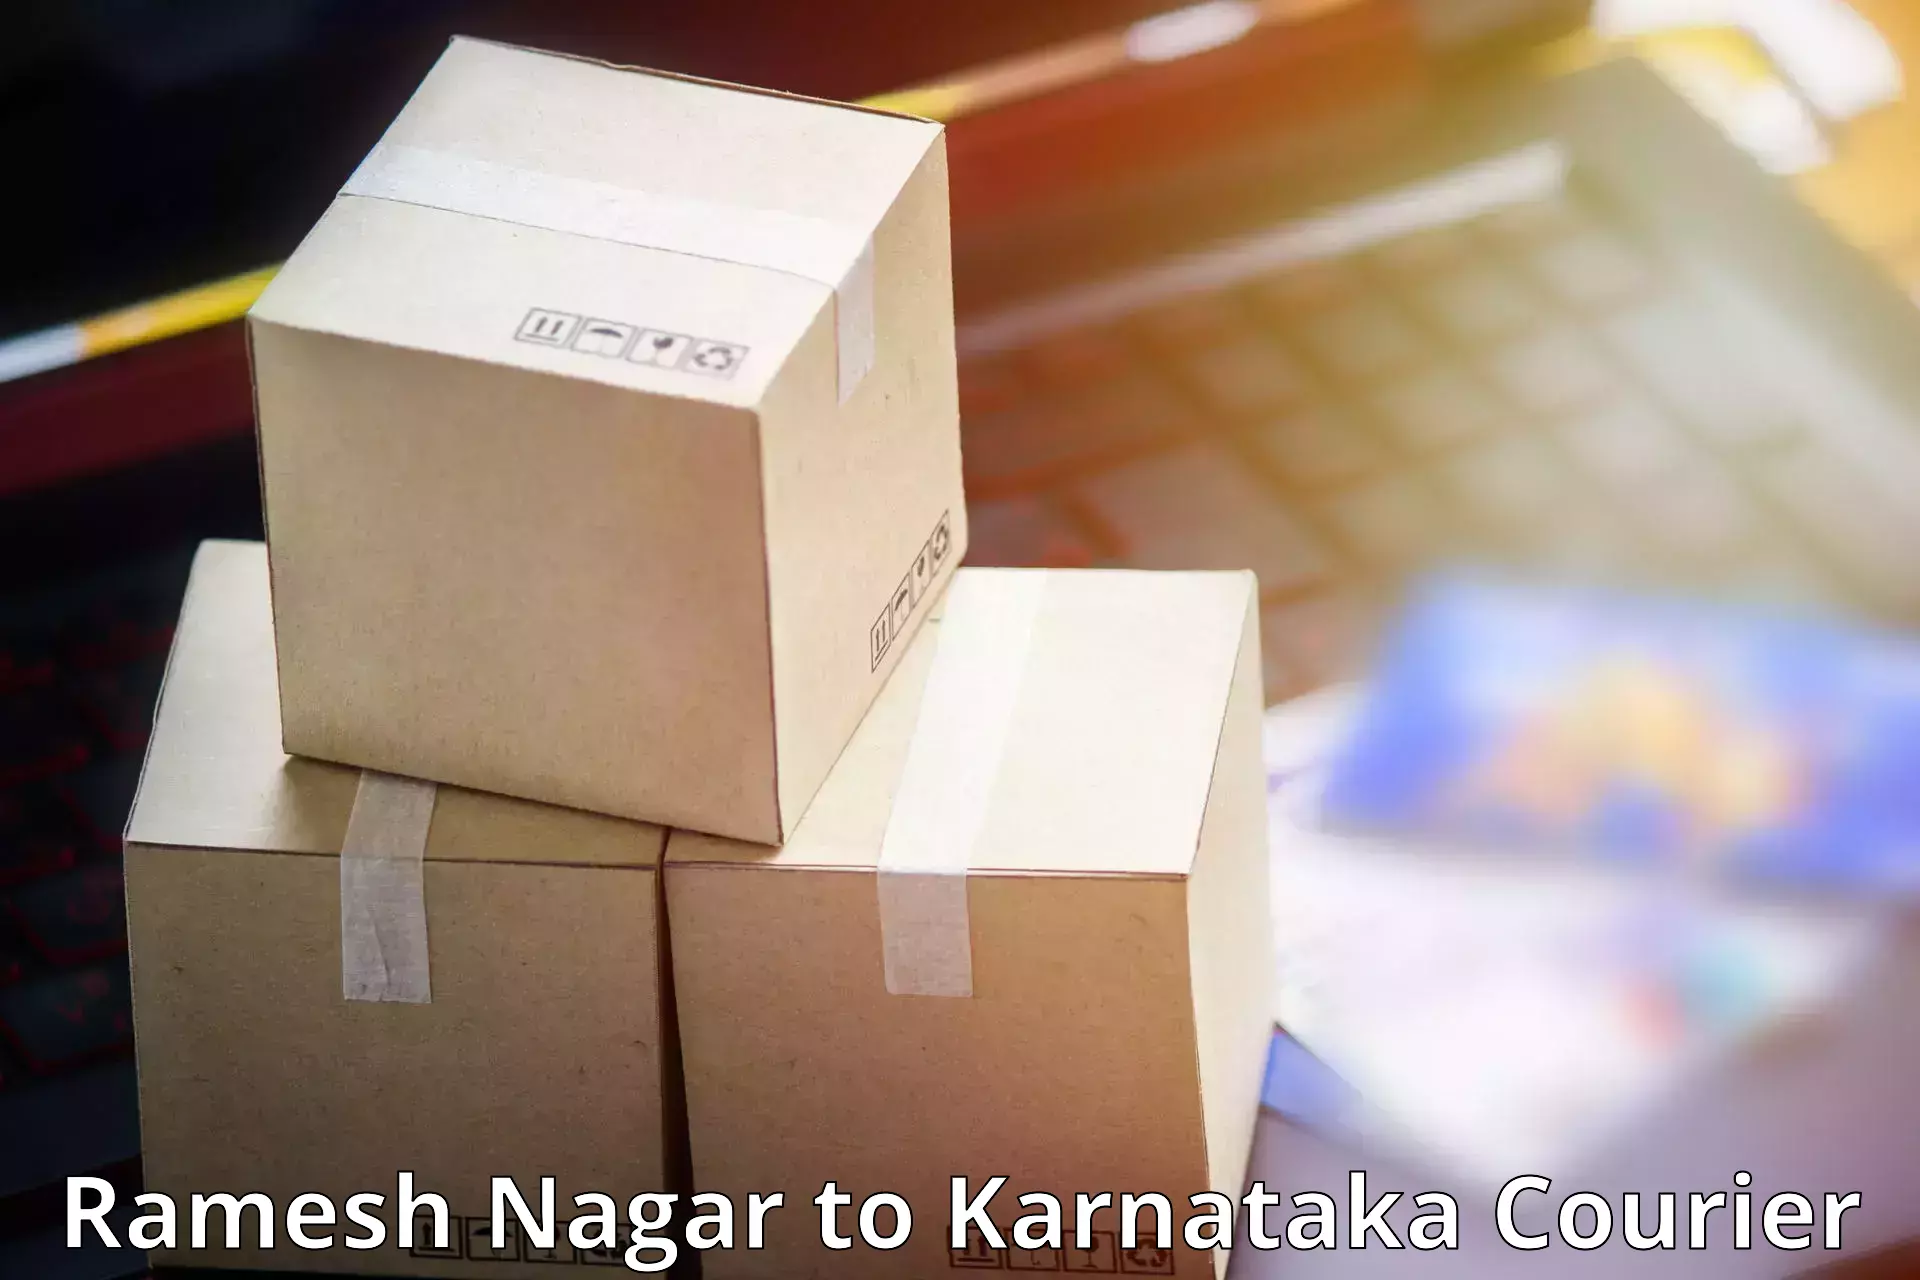 Business delivery service Ramesh Nagar to Sringeri